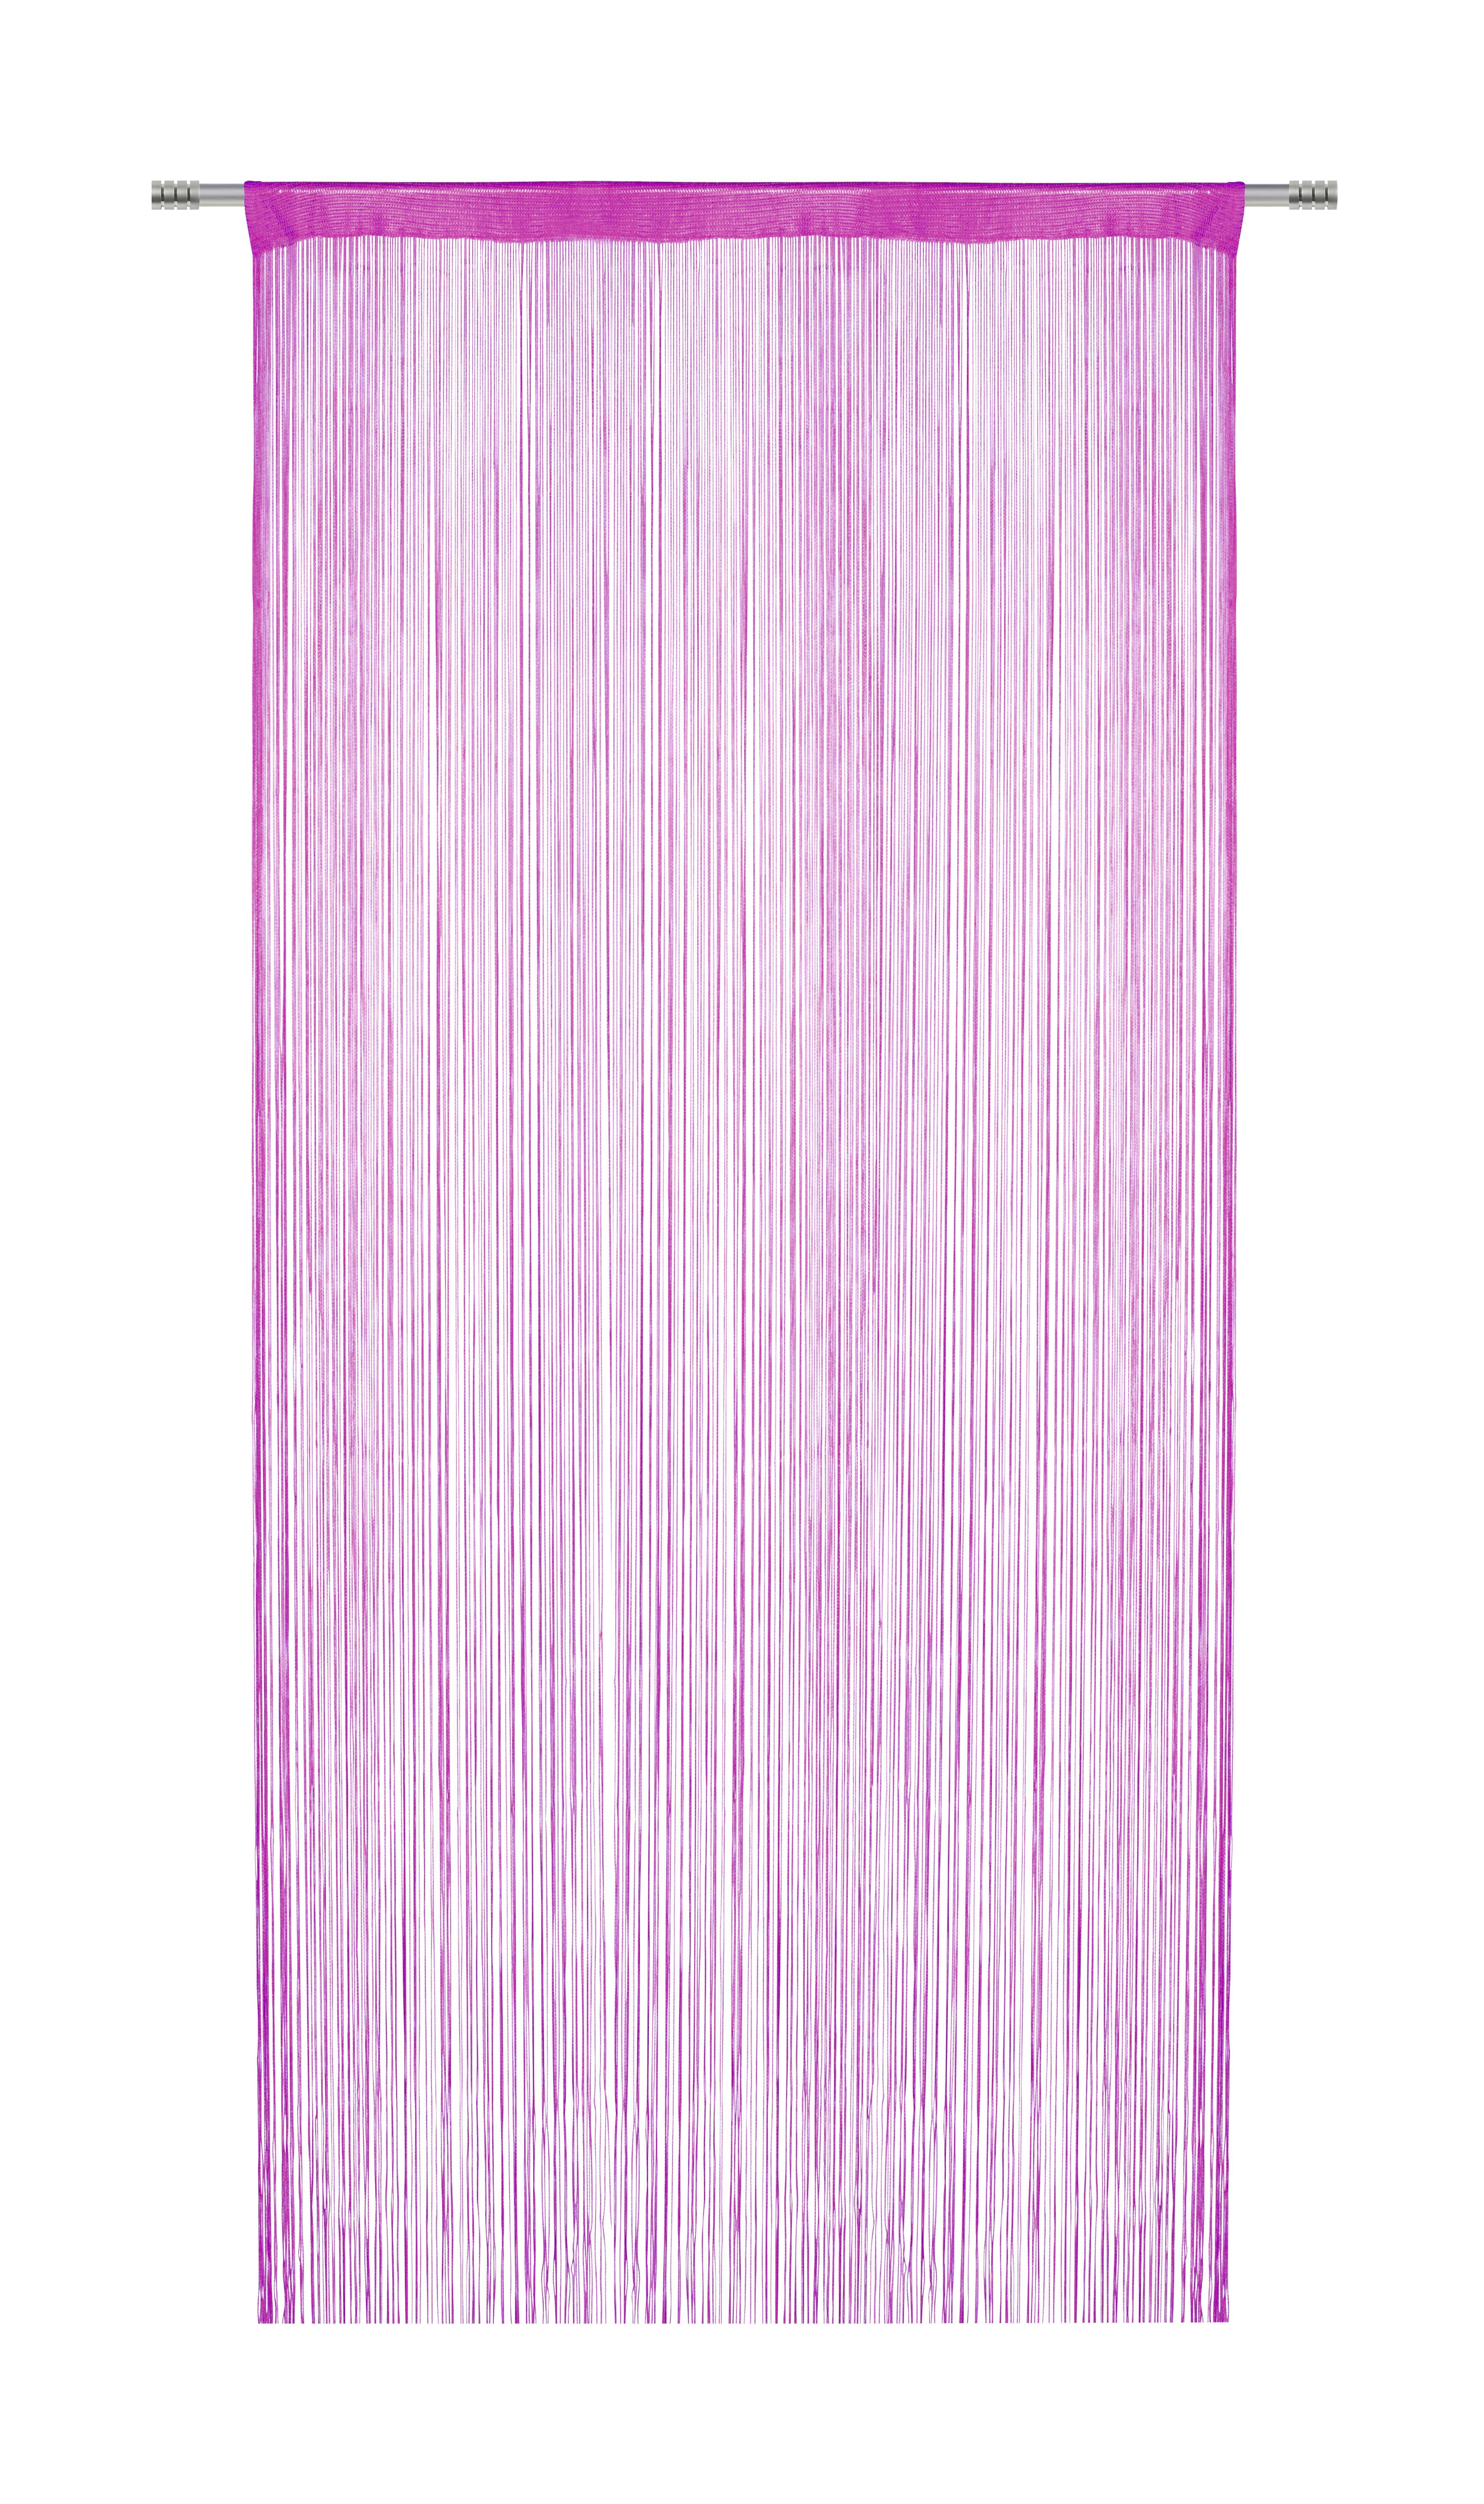 Fadenstore Franz in Pink ca. 90x245cm - Pink, Textil (90/245cm) - Modern Living